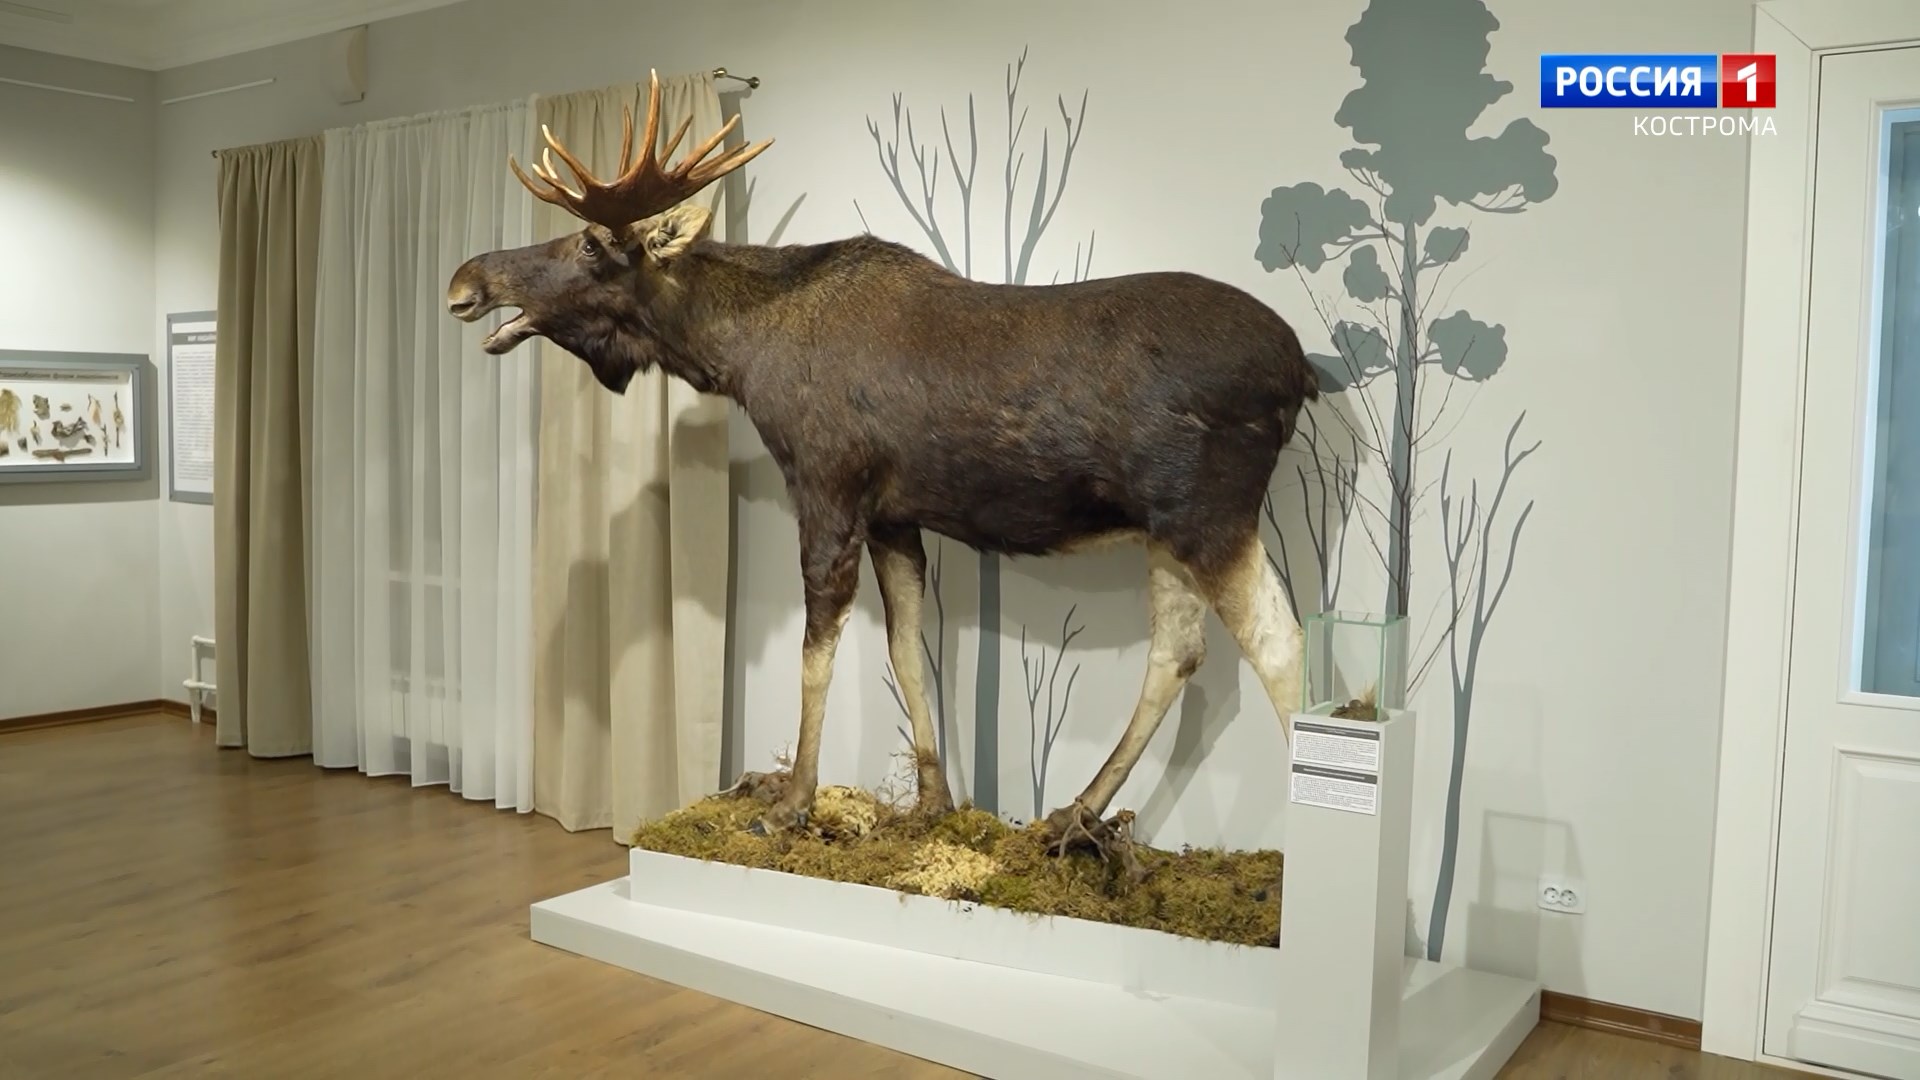 Зал россомахи, необычные грибы и удивительные животные: костромичам рассказали о новых экспозициях Музея природы